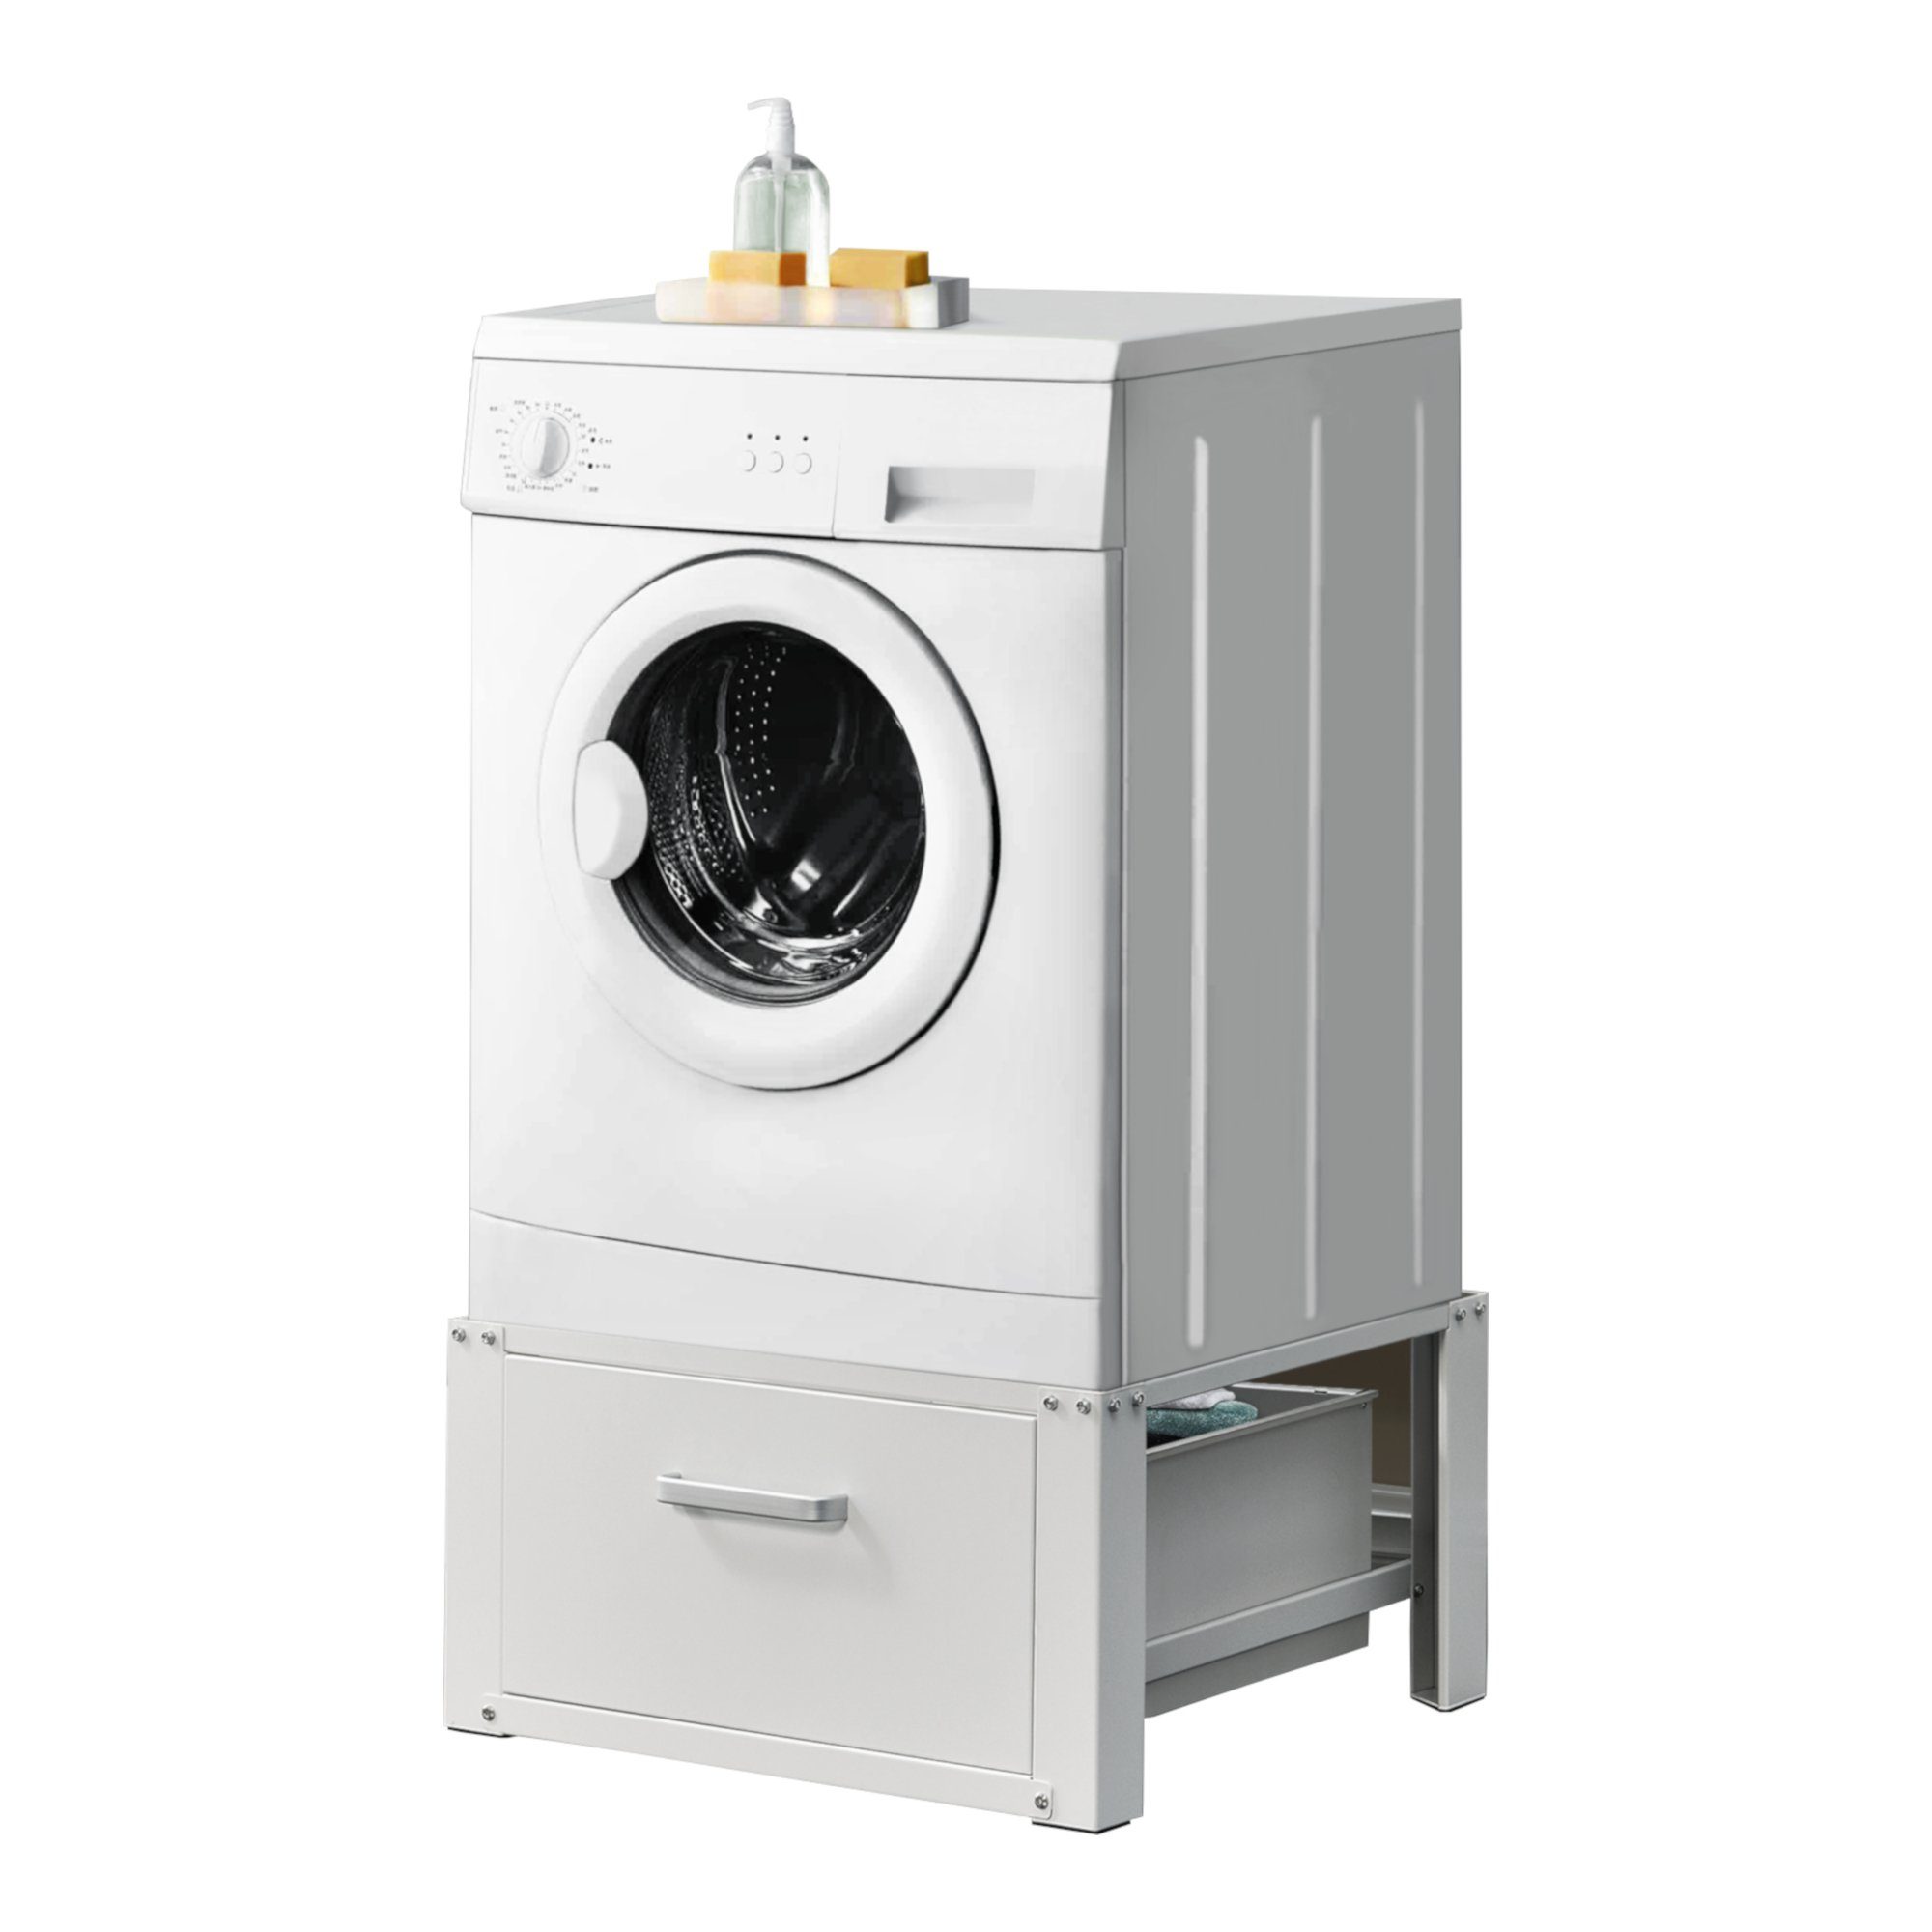 Waschmaschine Sockel Mit Rollen,46cm Untergestell Für Kühlschrank Sockel Für Trockner Waschmaschine Und Kühlschrank 